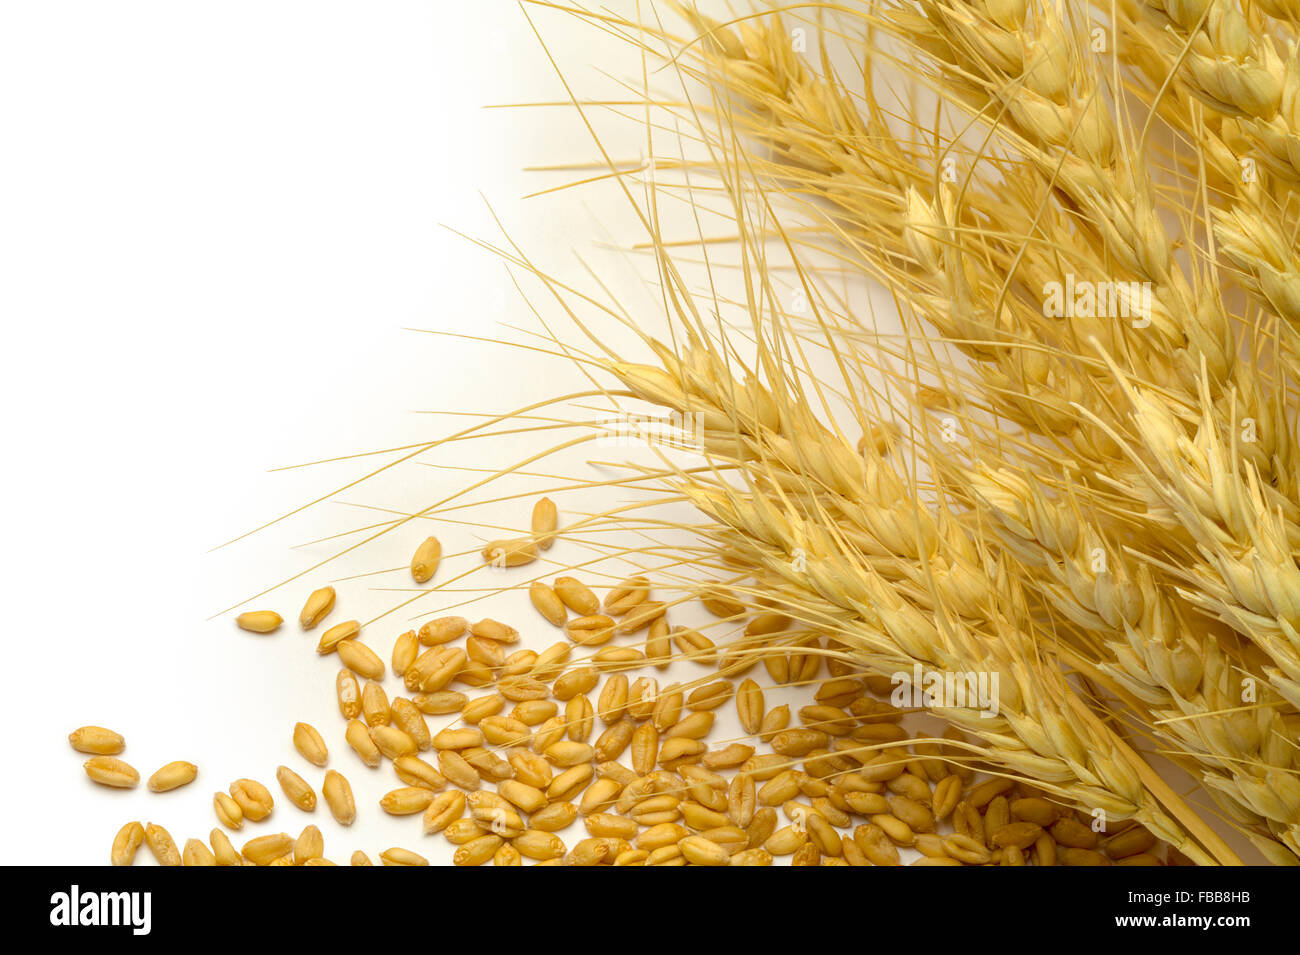 Les stocks de blé et de grains éparpillés sur fond blanc. Banque D'Images